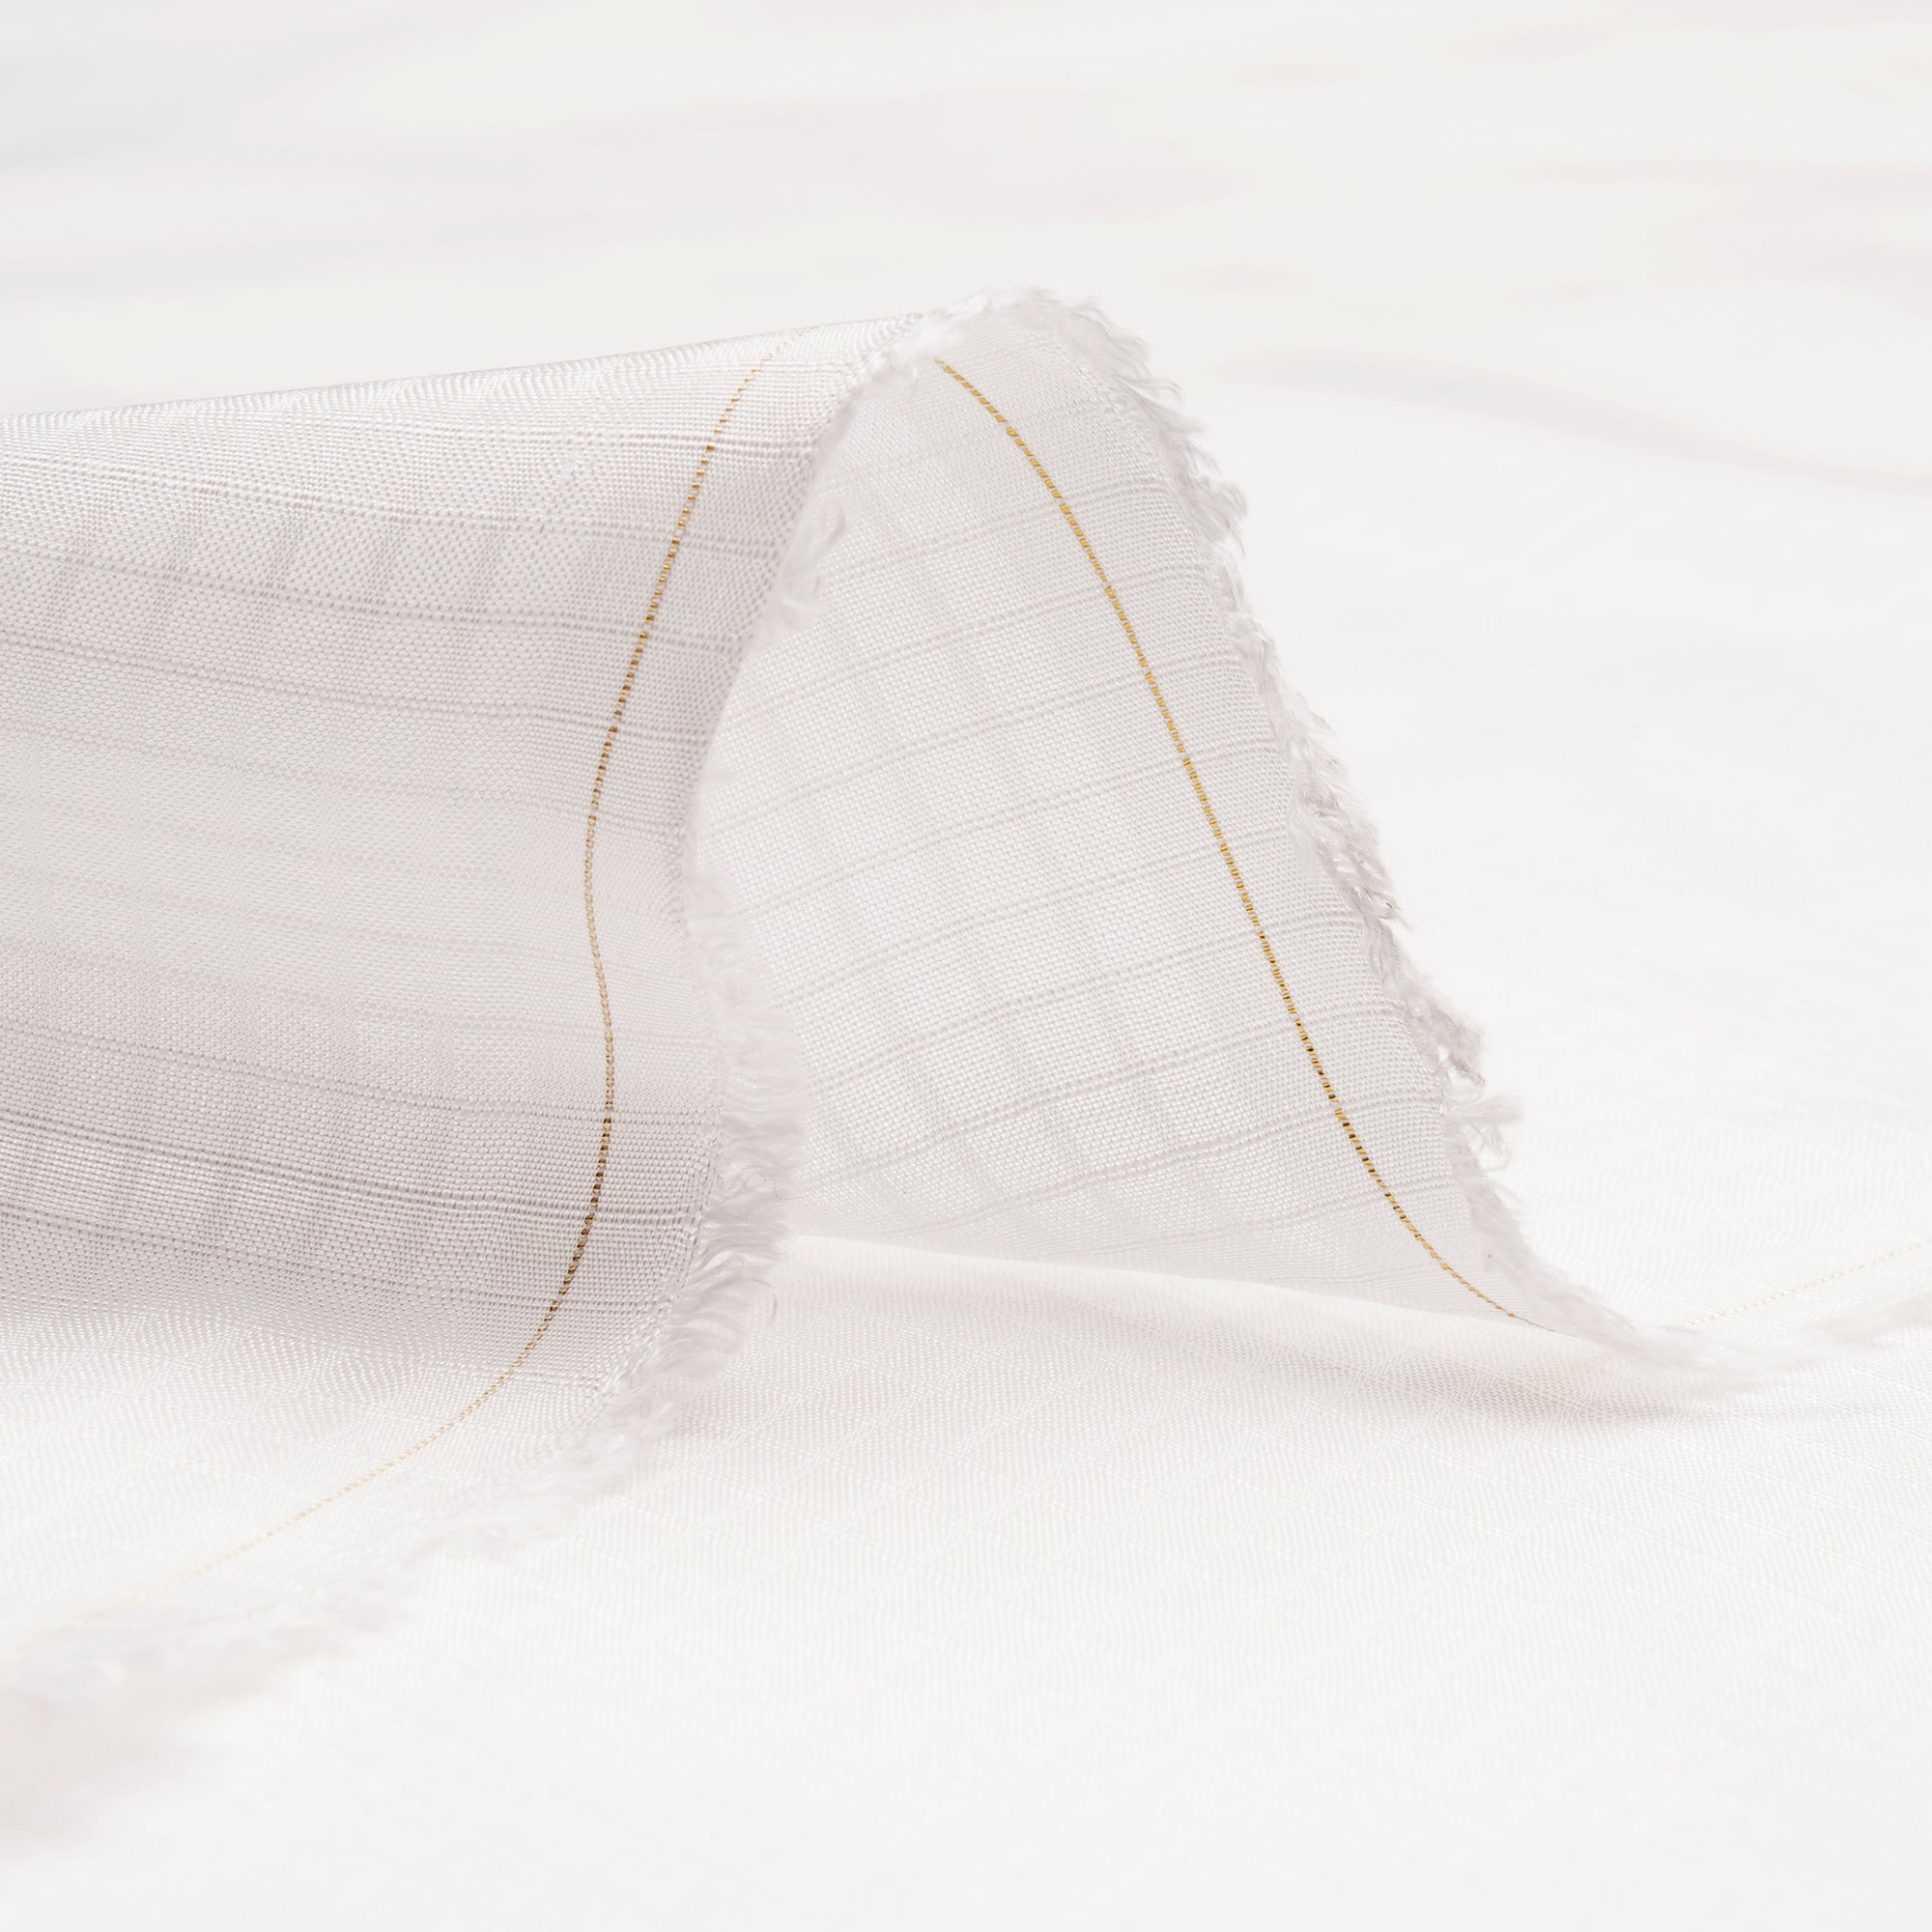 White Dyeable Checks Pattern Viscose Muslin Fabric